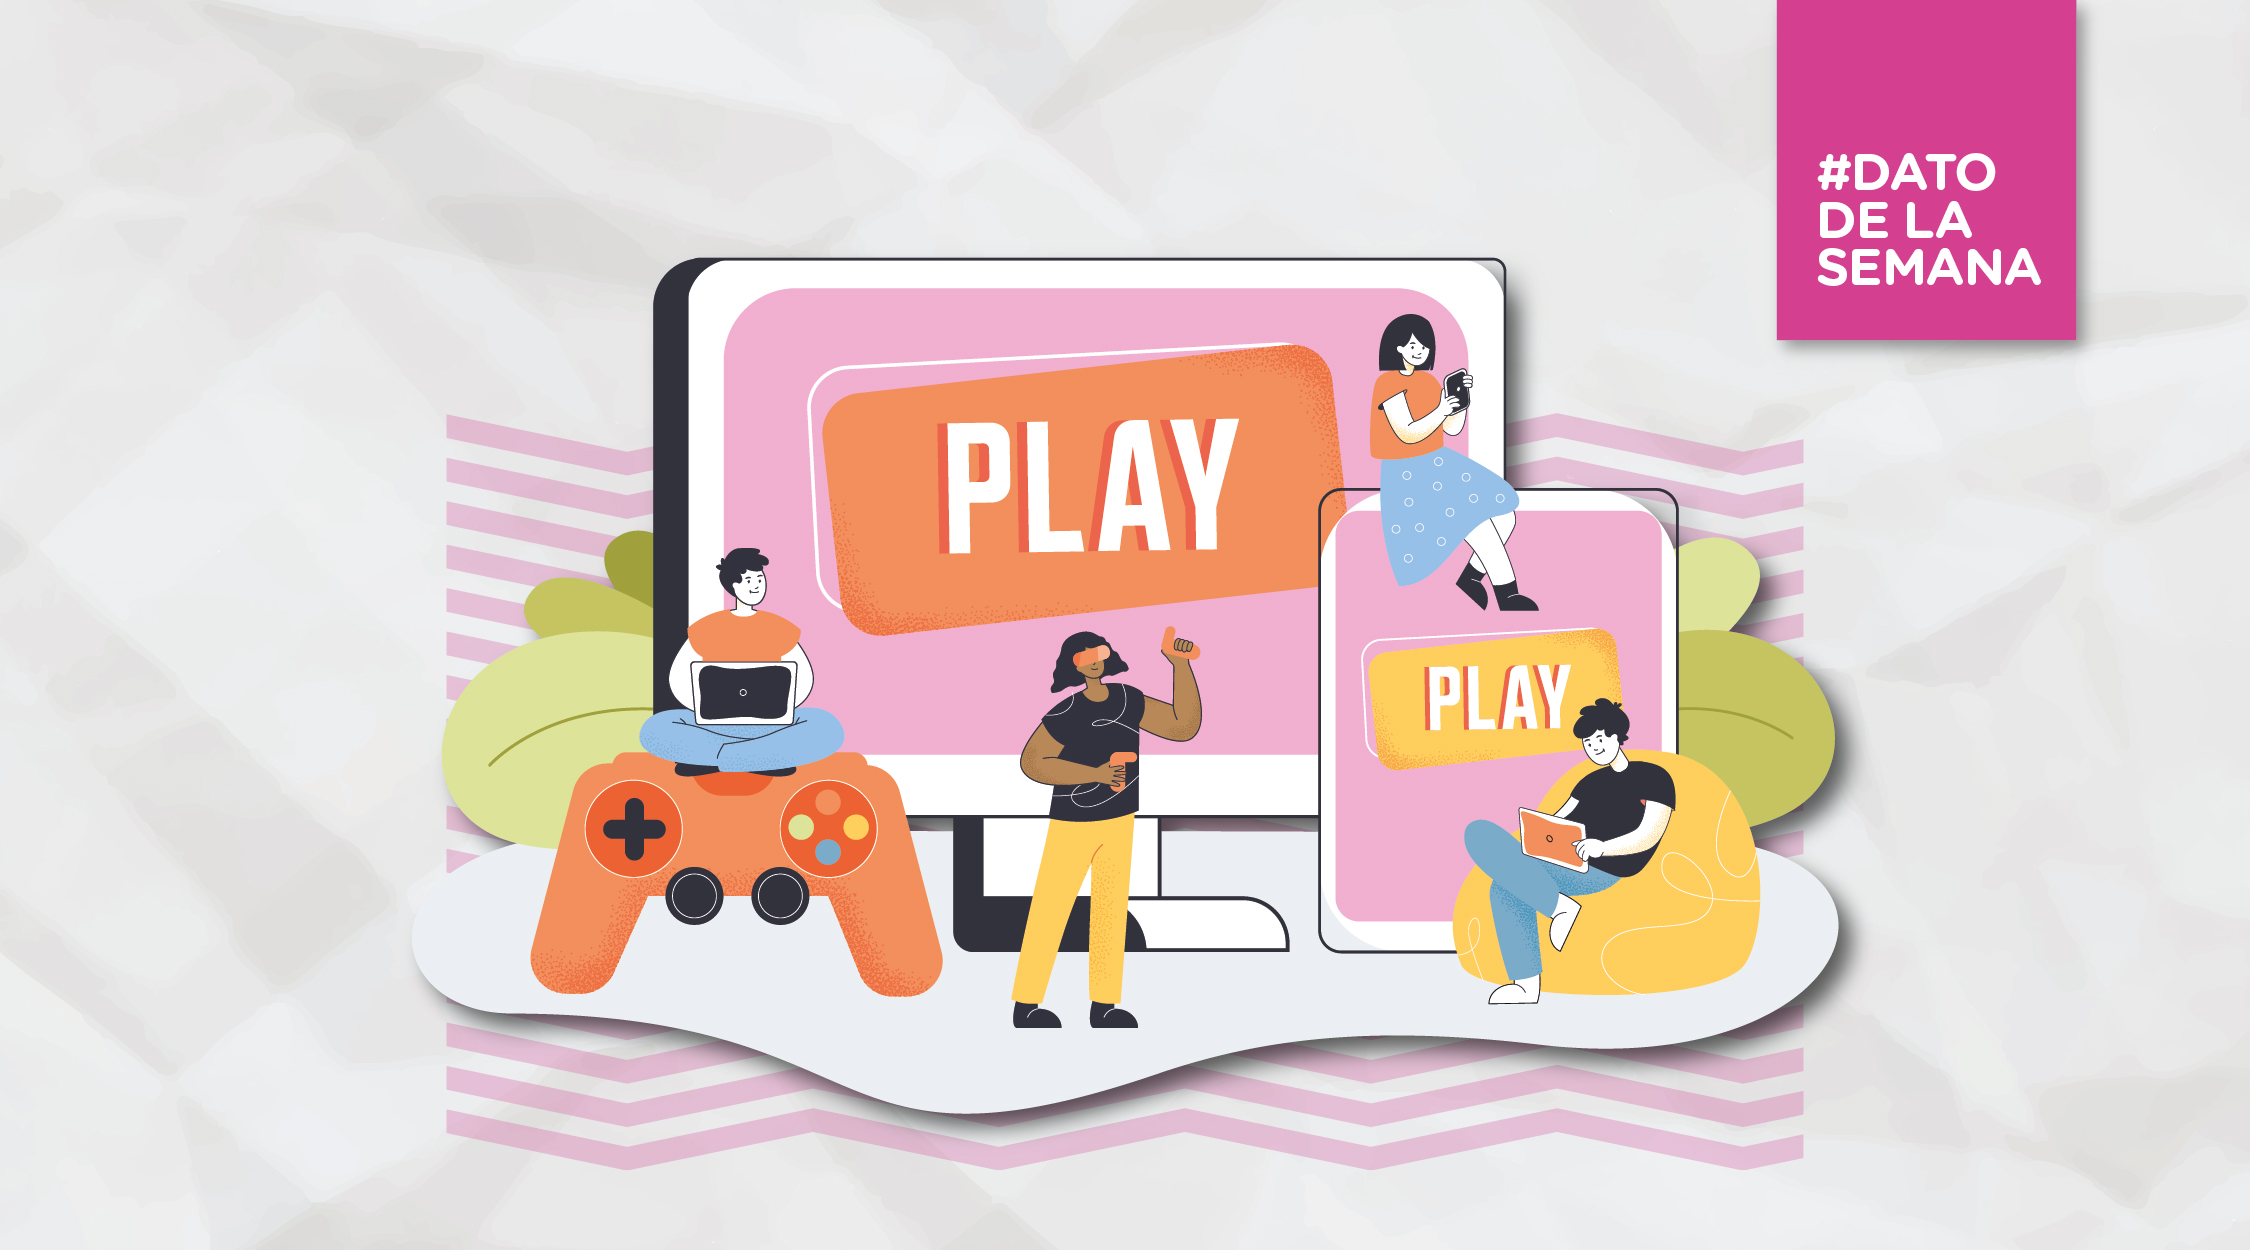 Juegos online: ¿qué debemos tener en cuenta?